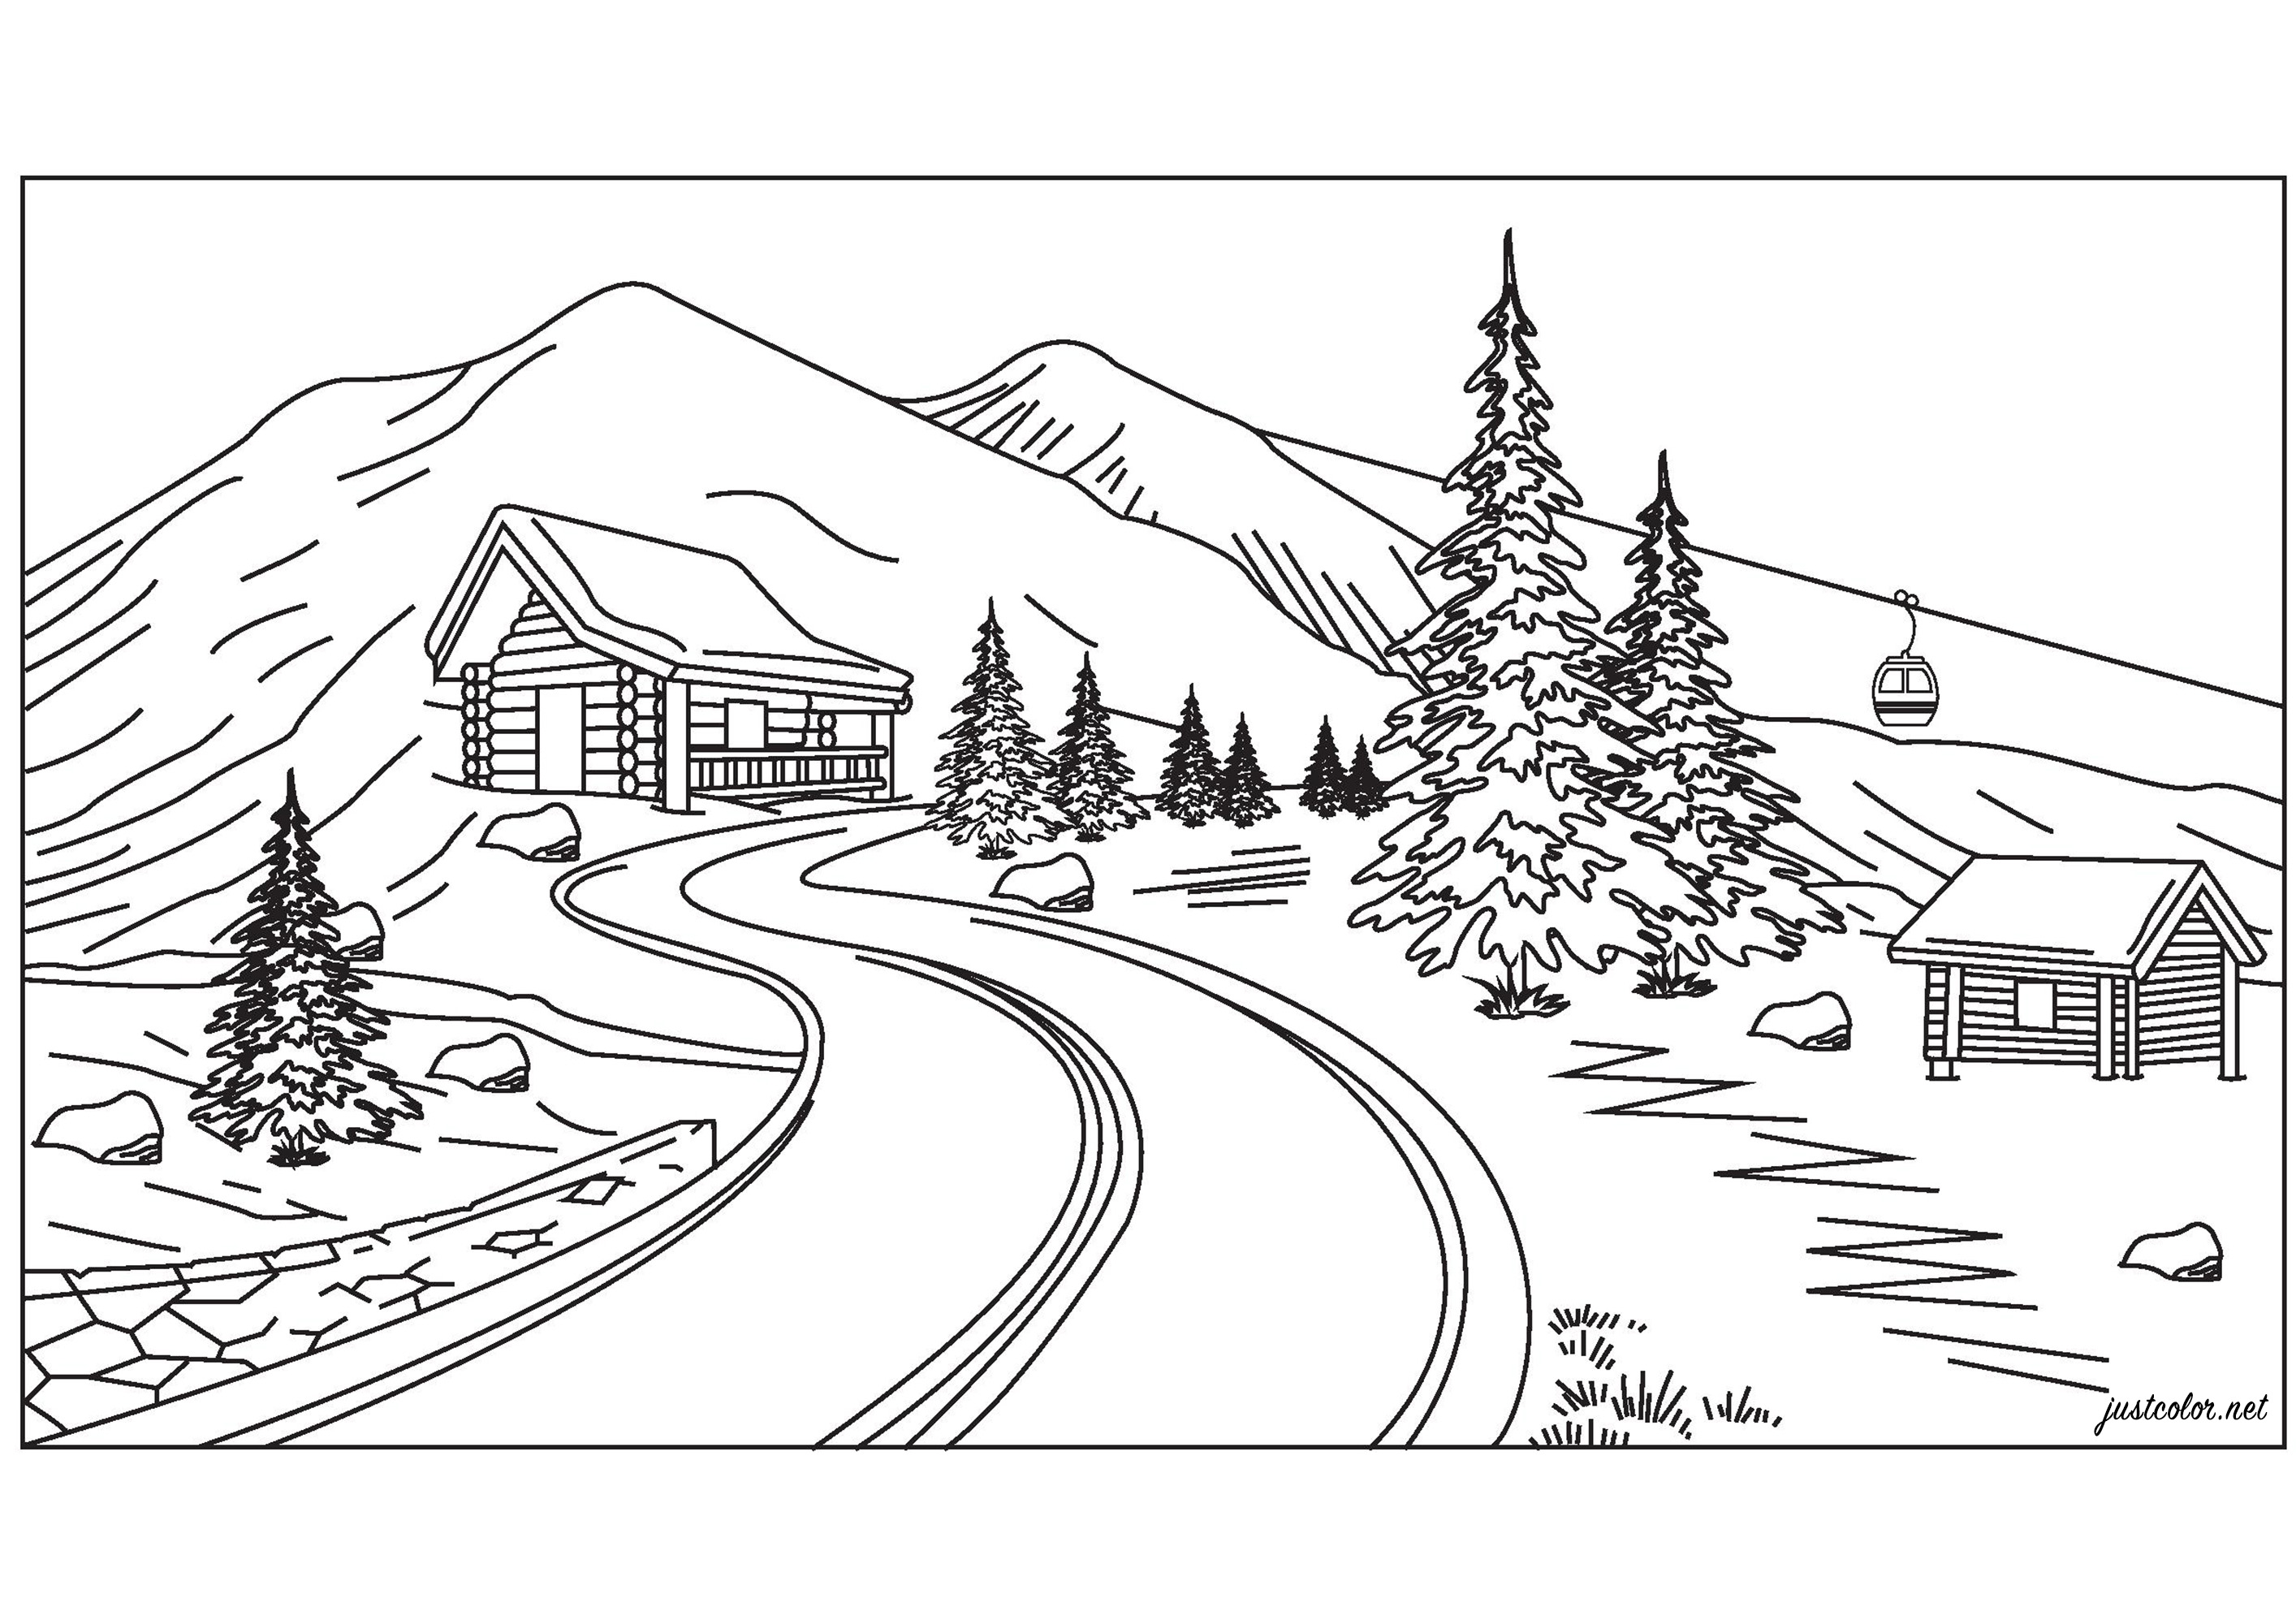 Hochgebirgslandschaft mit einem schönen Chalet, Tannenbäumen, Skiliften und schönen verschneiten Bergen, Künstler : Pierre C